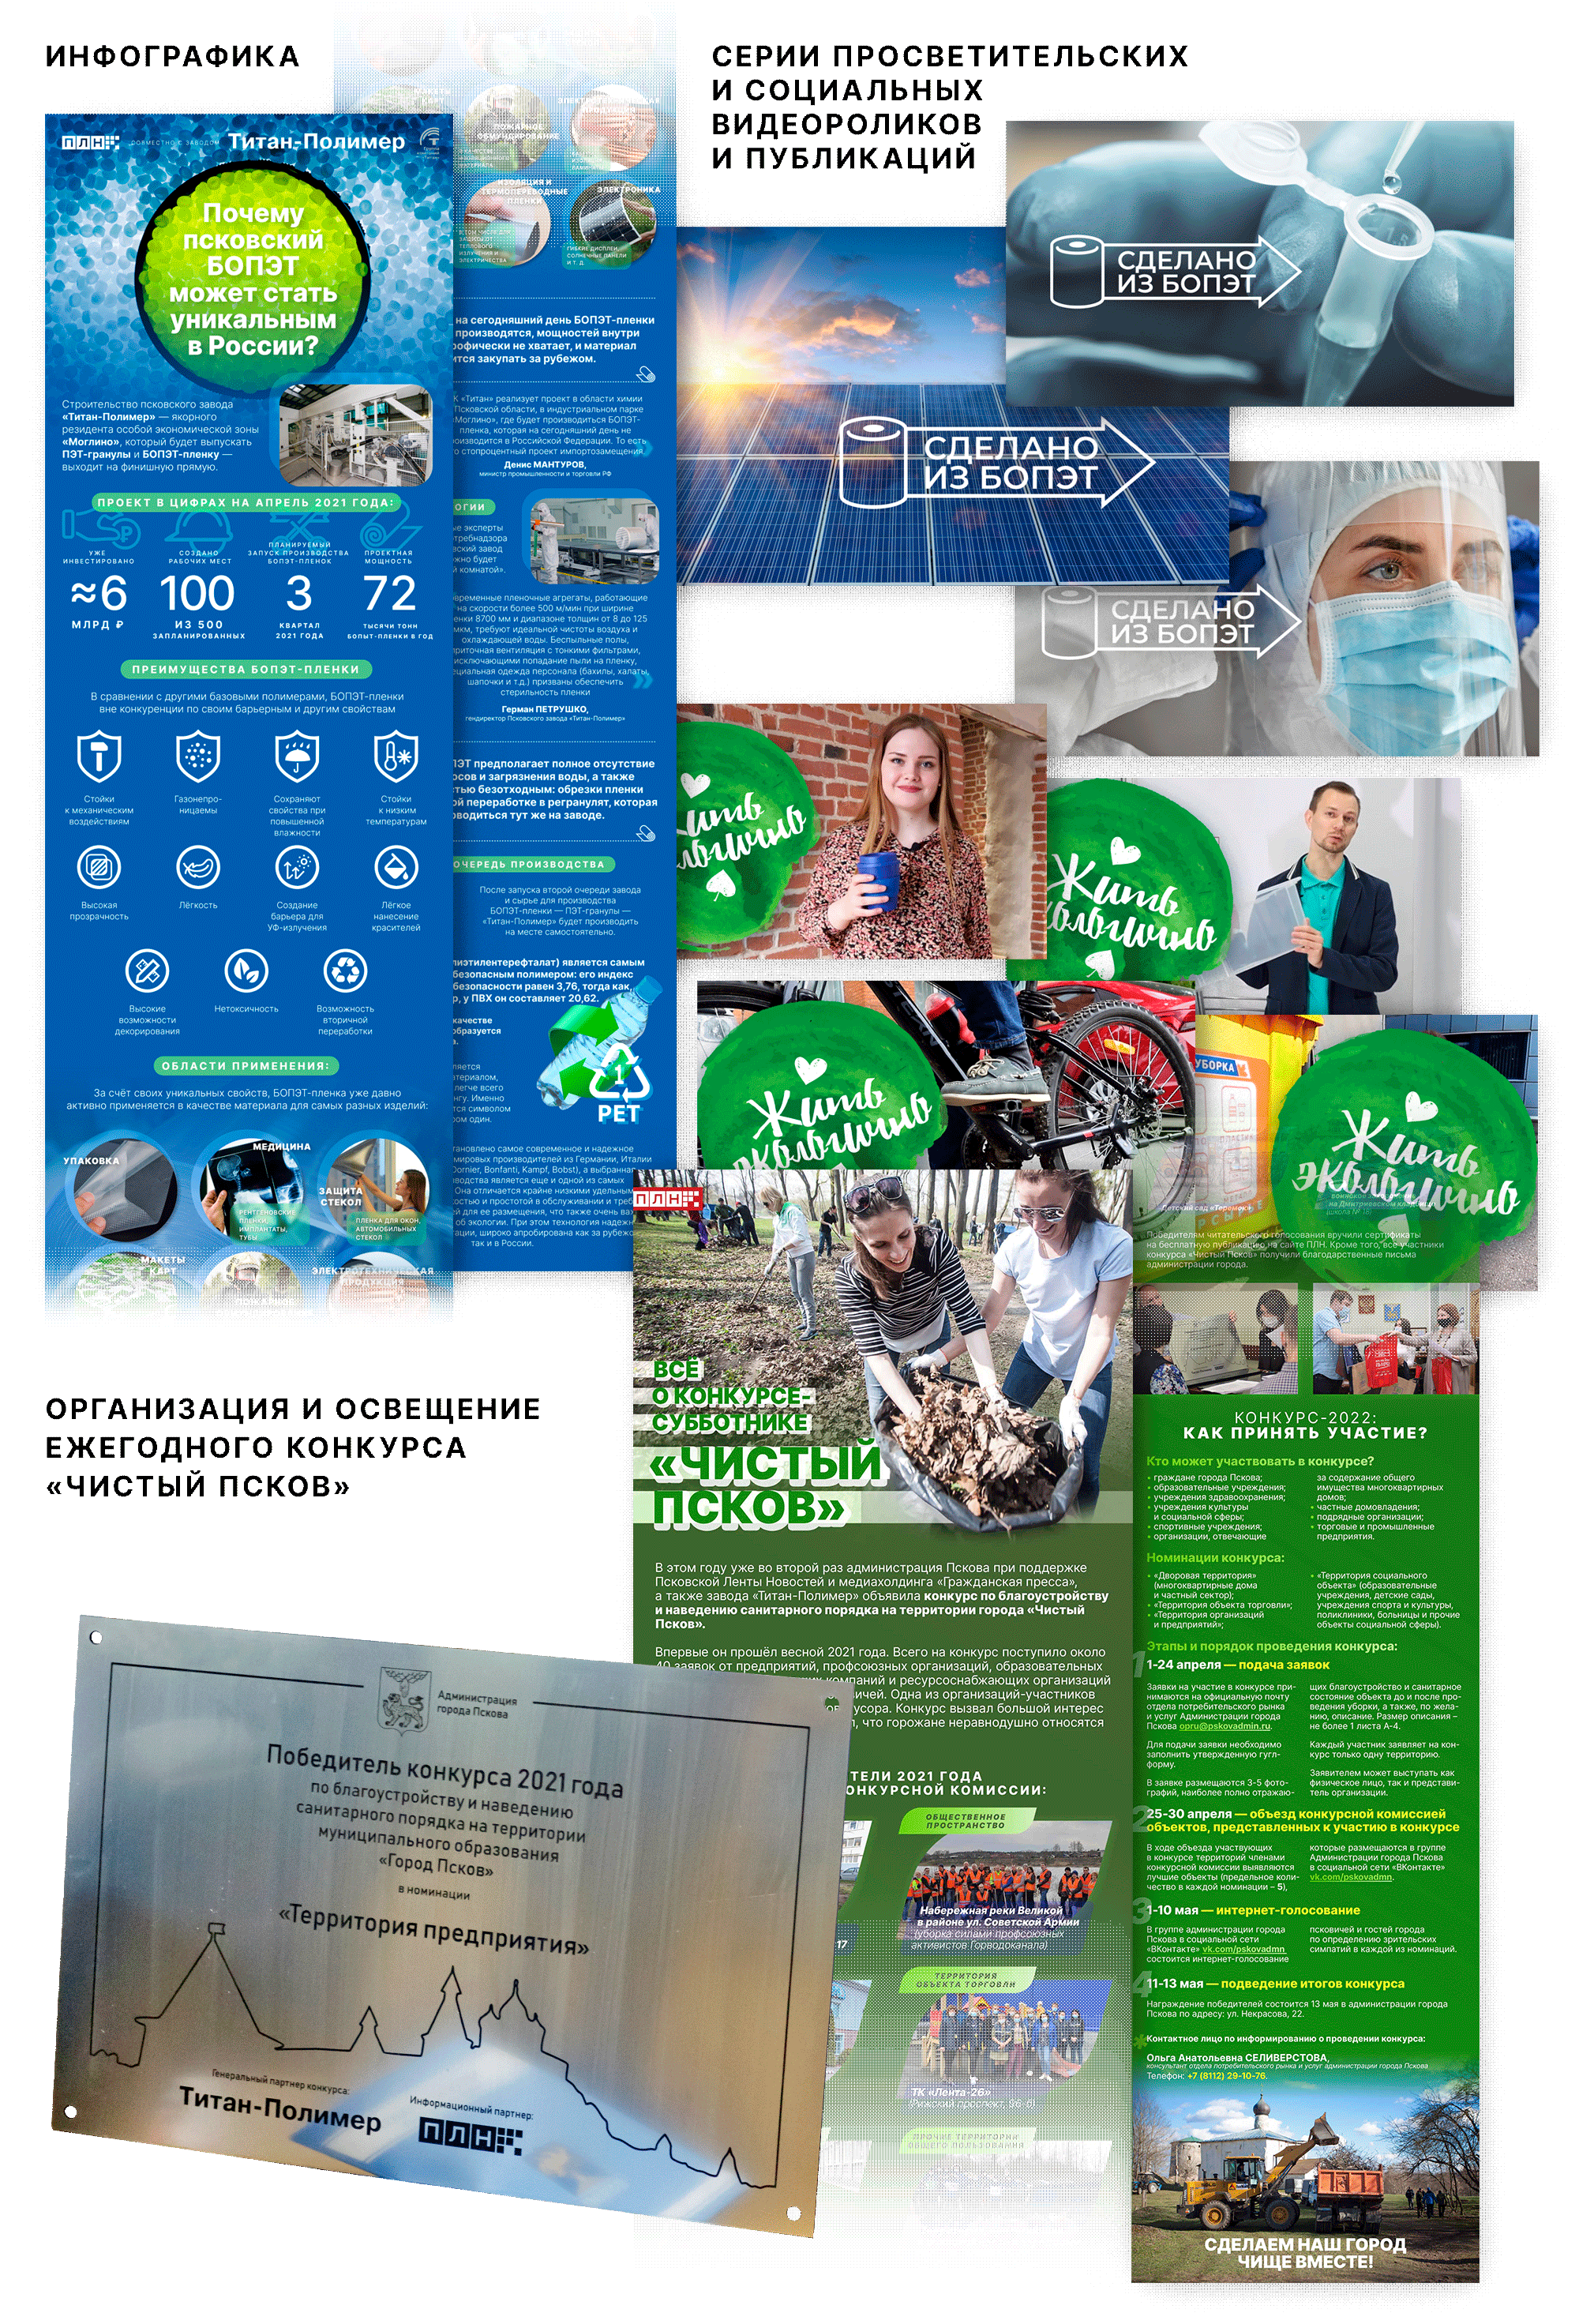 Социальный и просветительские кампании для якорного резидента ОЭЗ «Моглино» — завода «Титан-полимер»